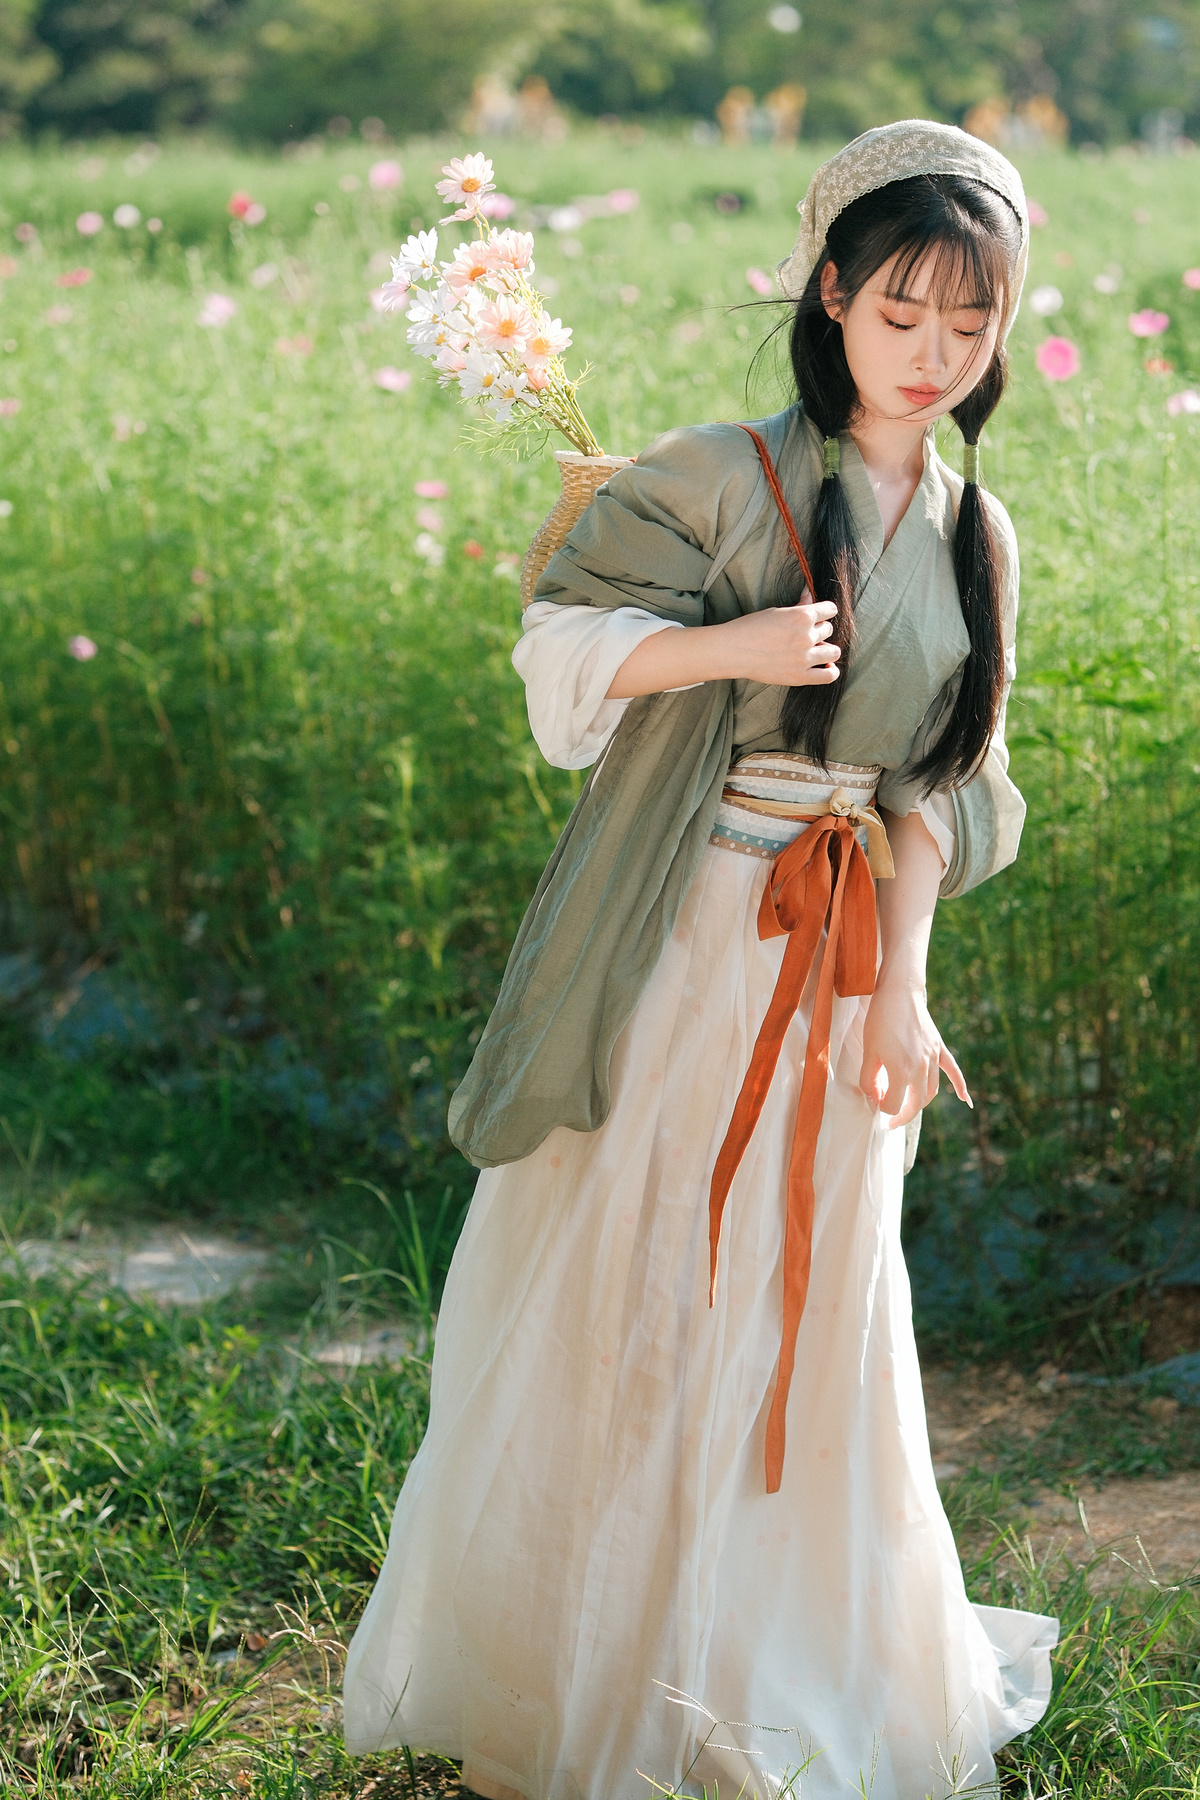 一位穿着白色连衣裙的年轻女子手持雨伞站在花丛中。